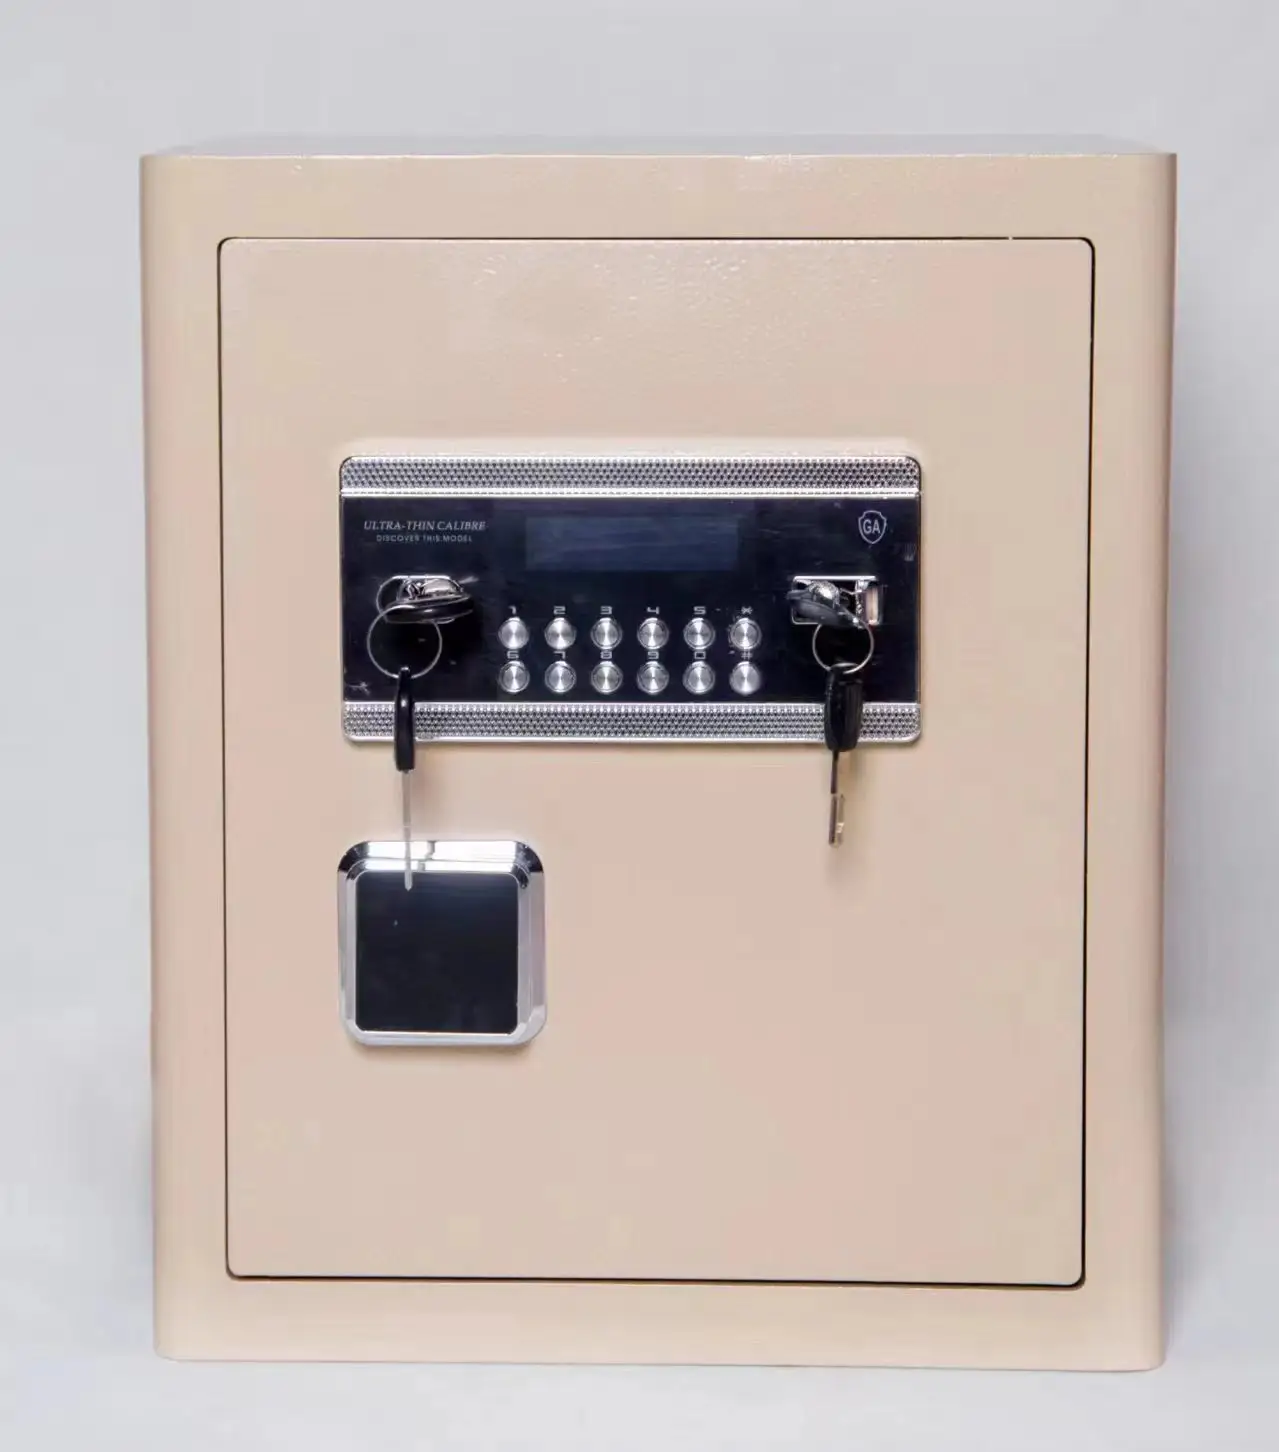 Cofre com caixa de chave digital com impressão digital cofre inteligente